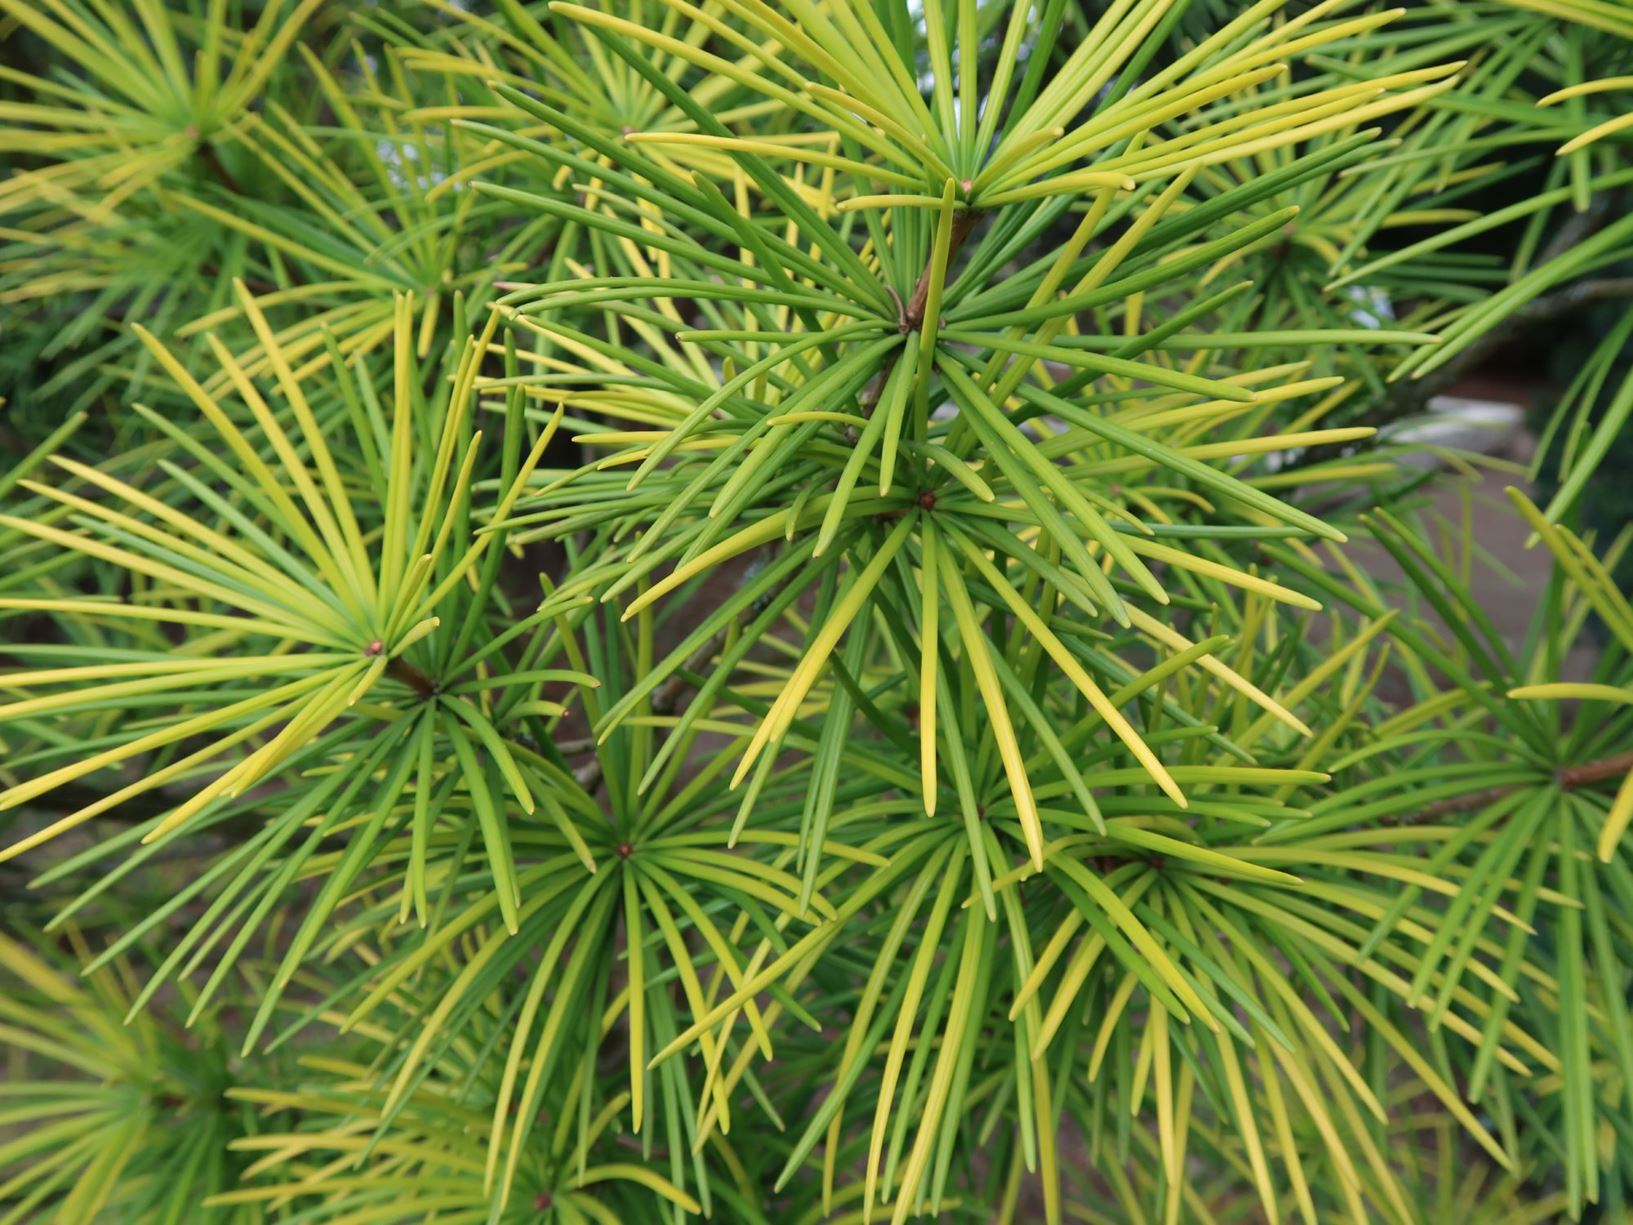 Sciadopitys verticillata - Japanische Schirmtanne, Umbrella Pine